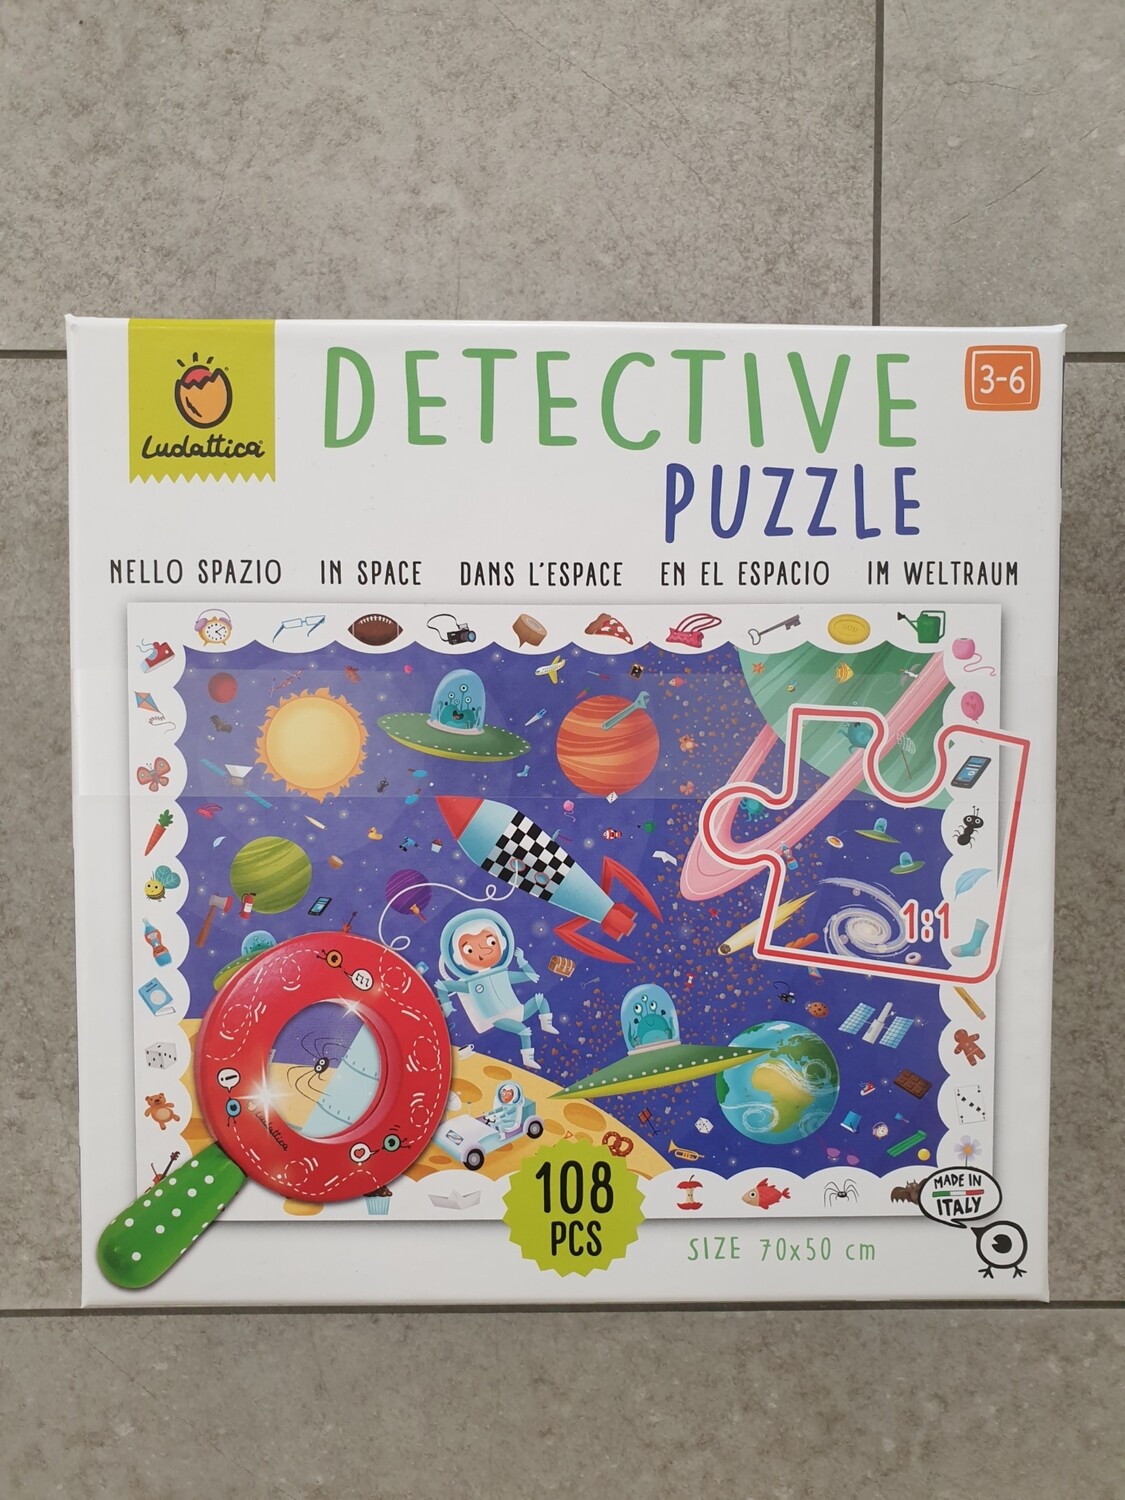 Puzzle detective nello spazio Ludattica